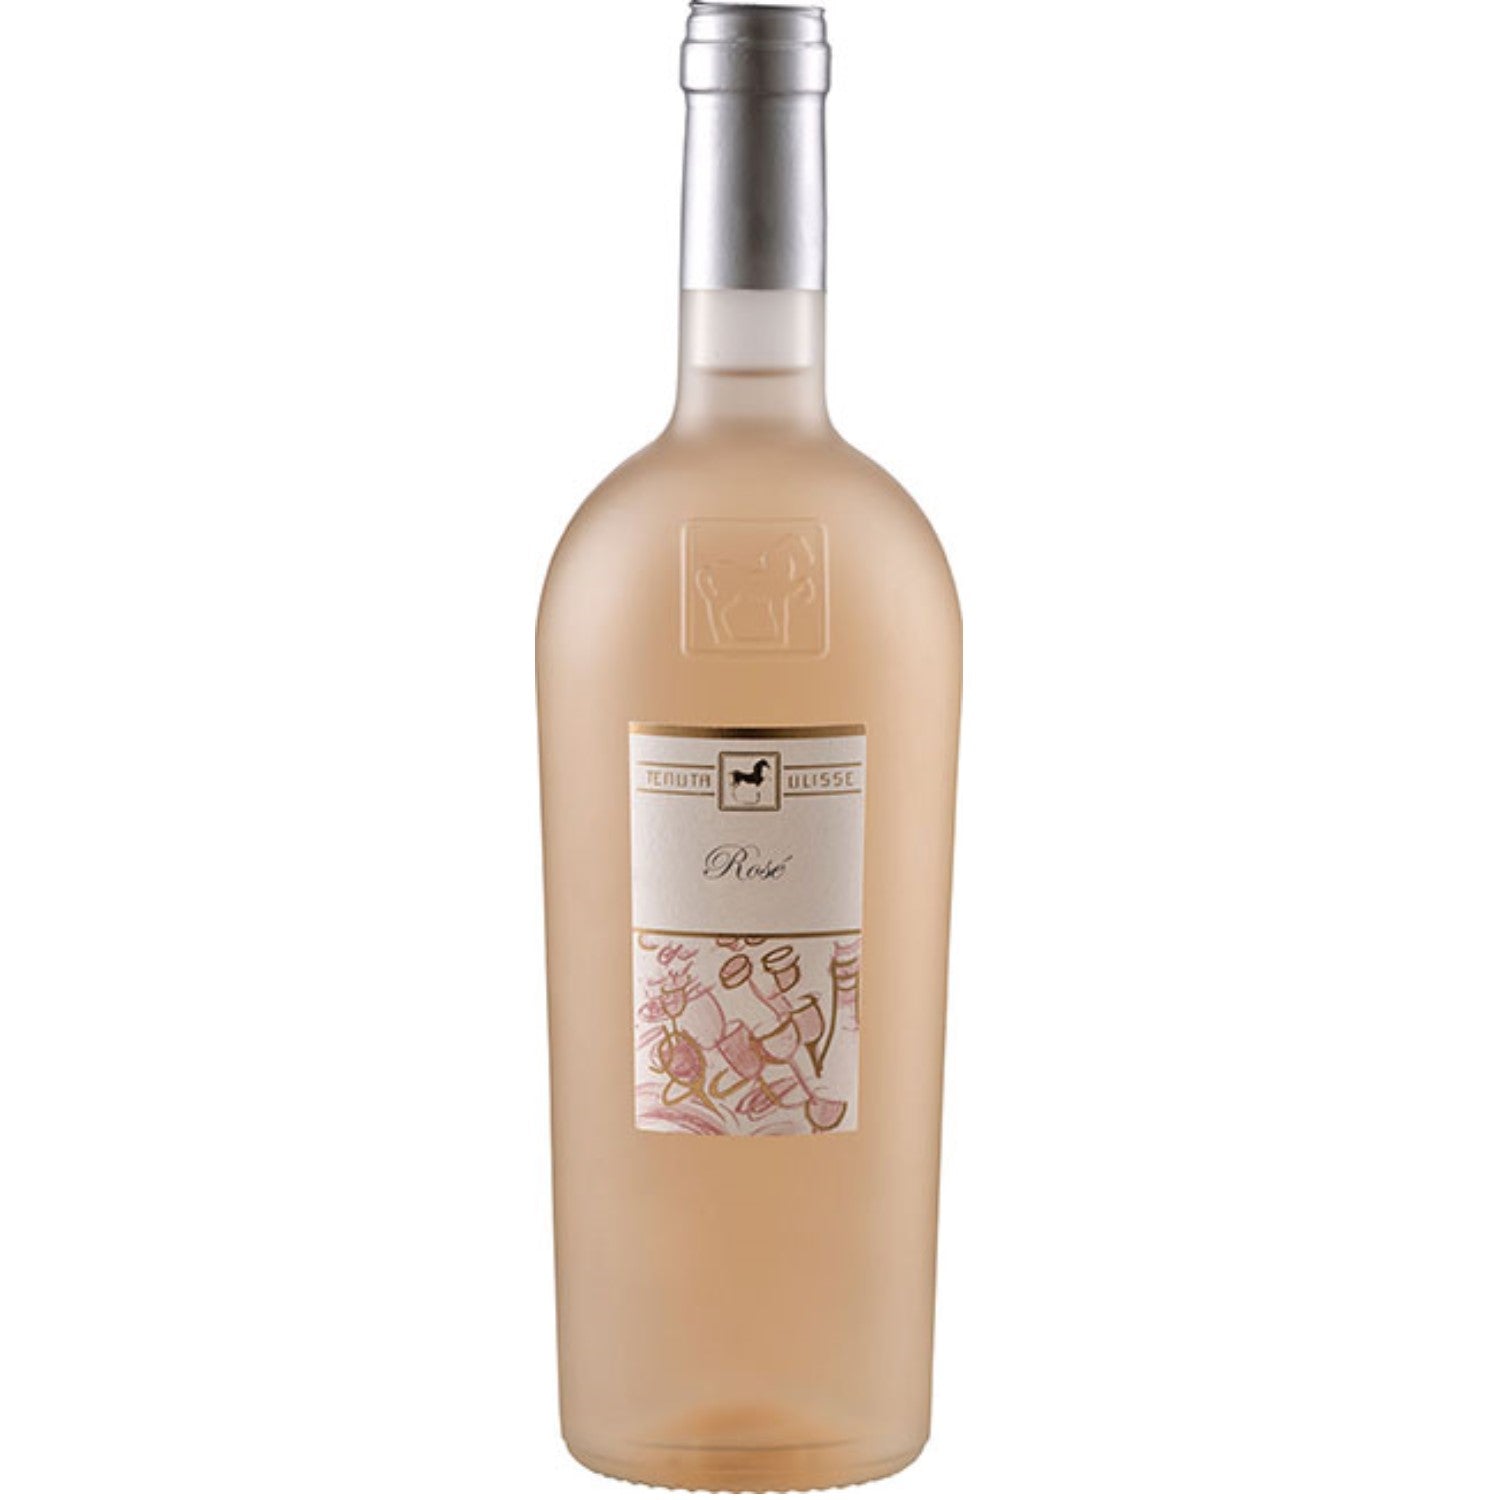 Tenuta Ulisse Linea Ulisse Selezione Roséwein Wein Trocken IGP Italien (3 x 0.75l) - Versanel -